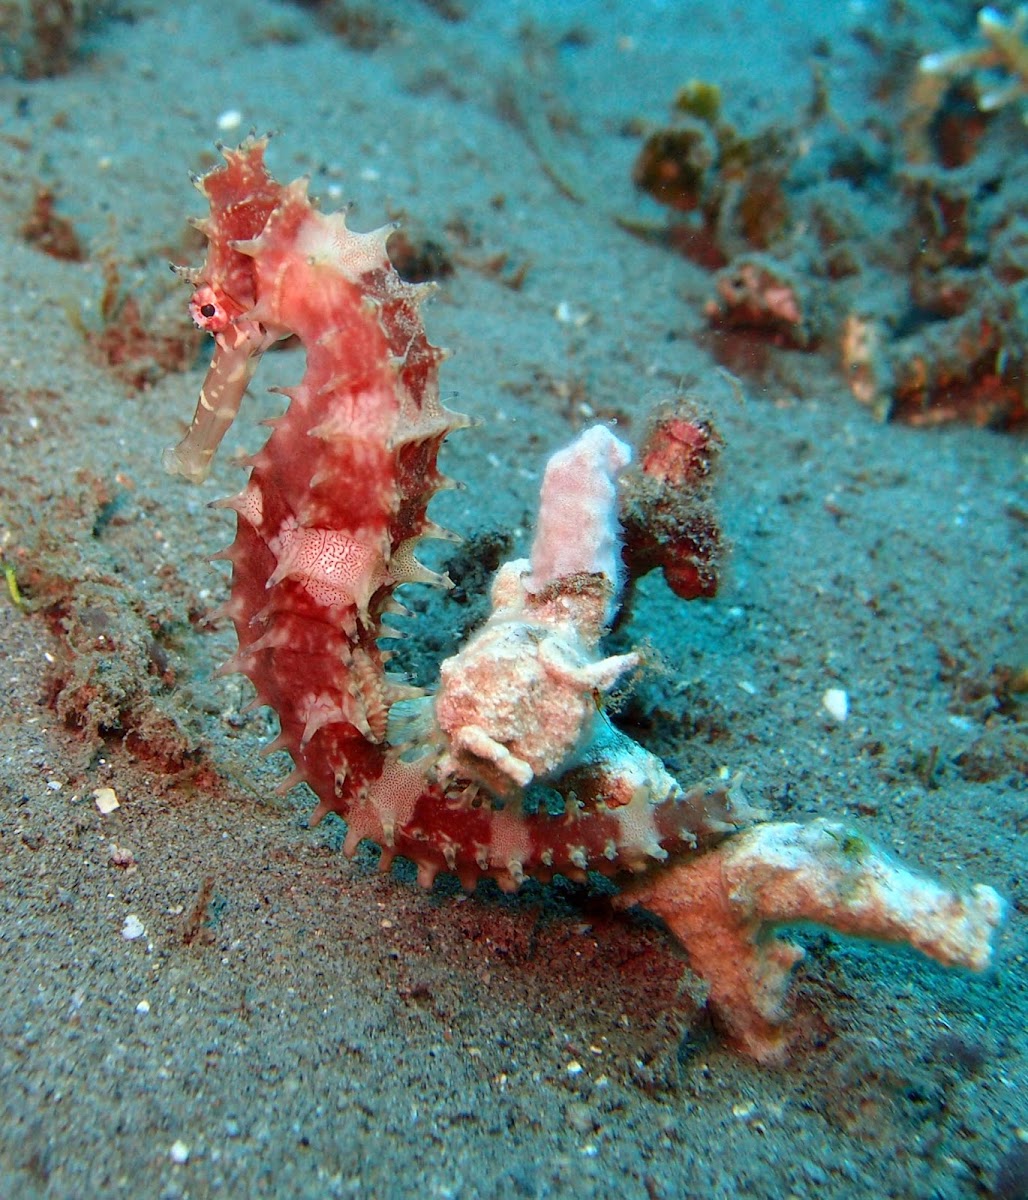 Thorny sea horse